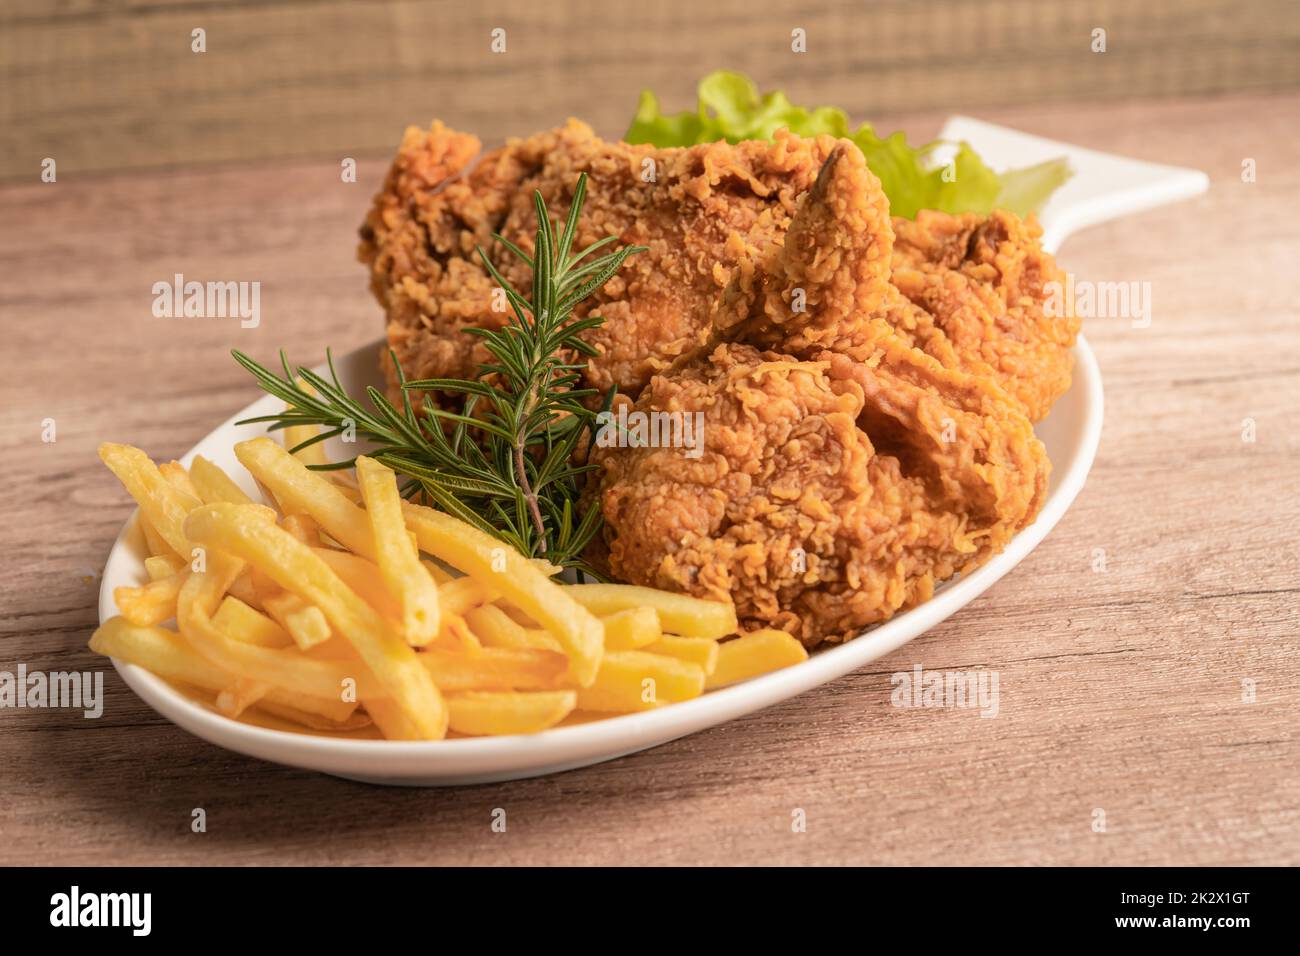 Poulet frit et croustilles avec feuille de romarin, nourriture Junk à haute teneur en calories servie sur une assiette blanche Banque D'Images